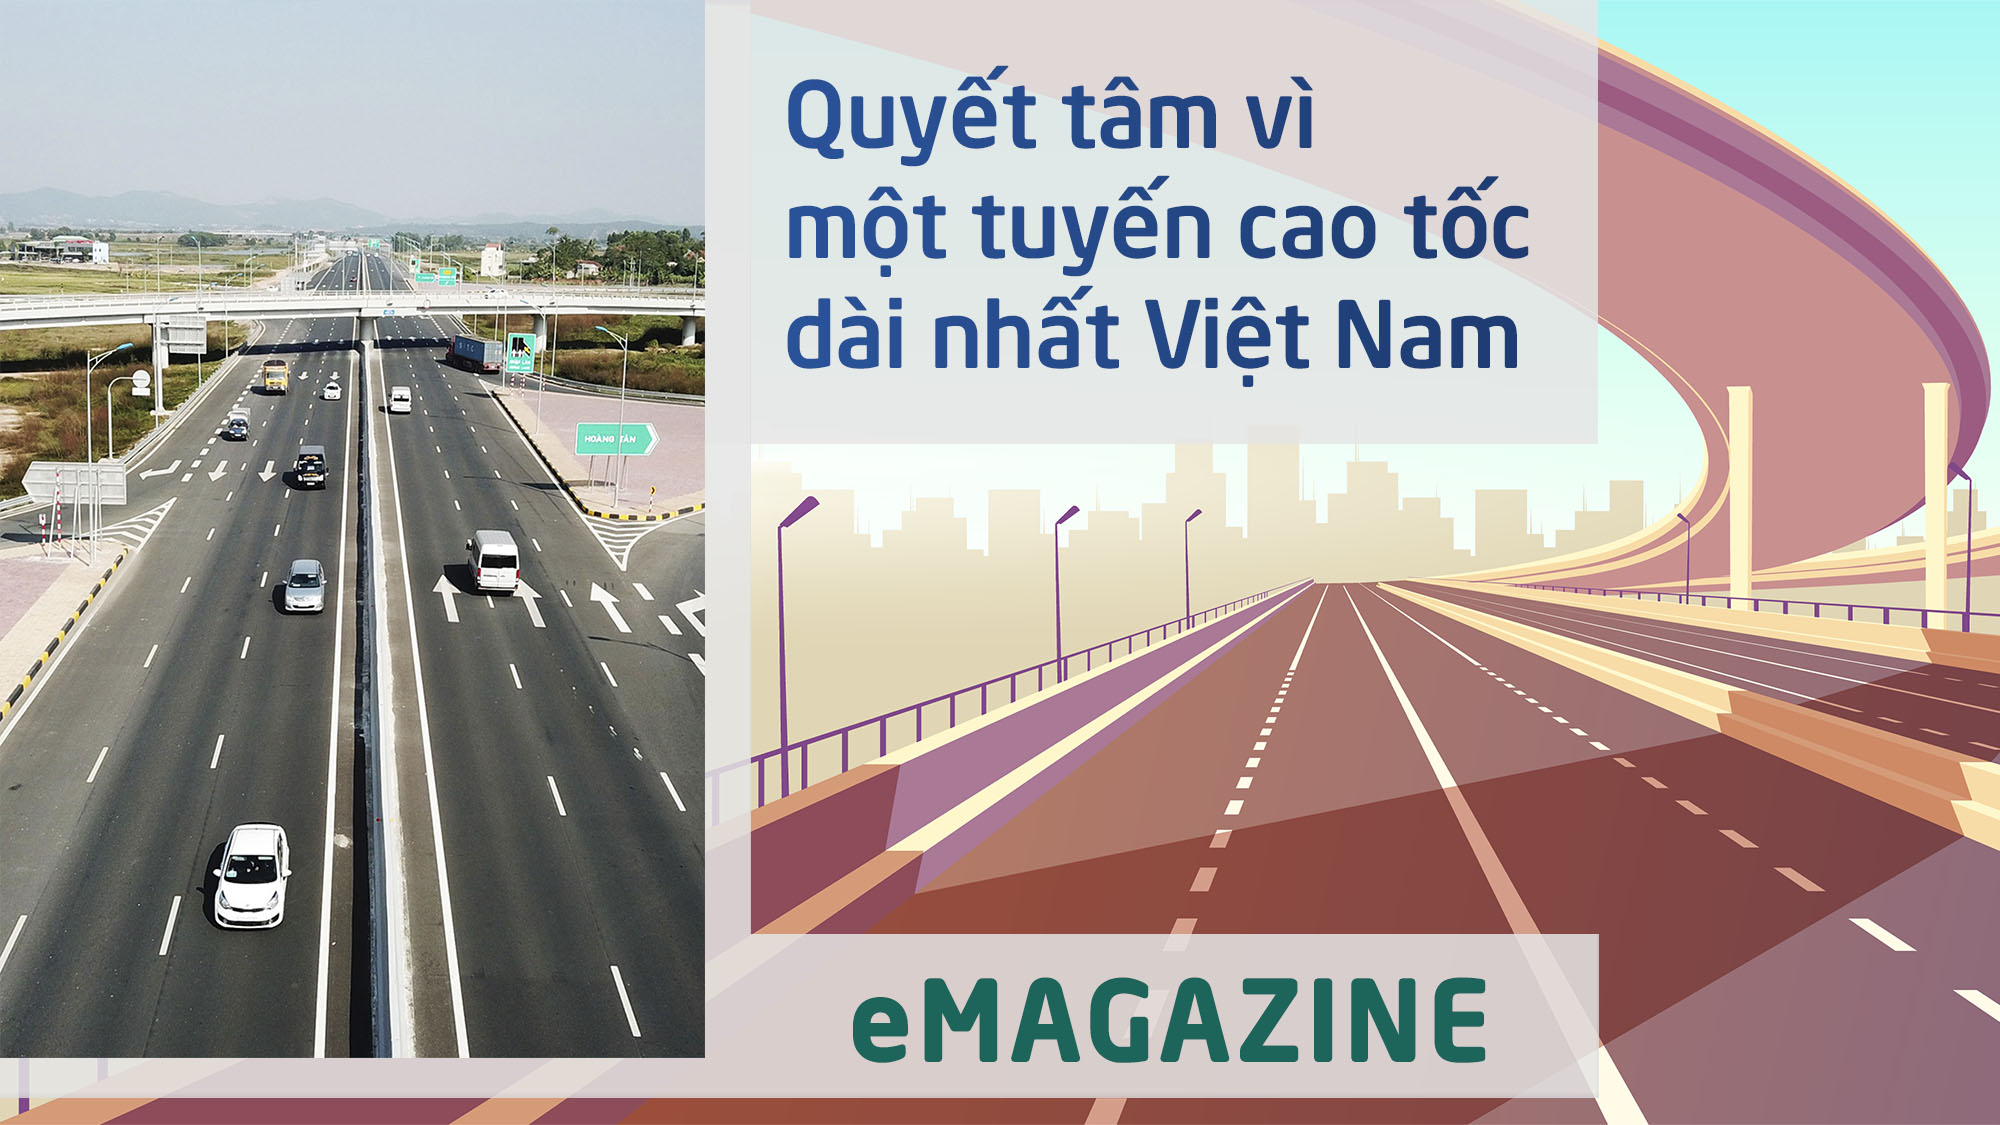 Quyết tâm vì một tuyến cao tốc dài nhất Việt Nam